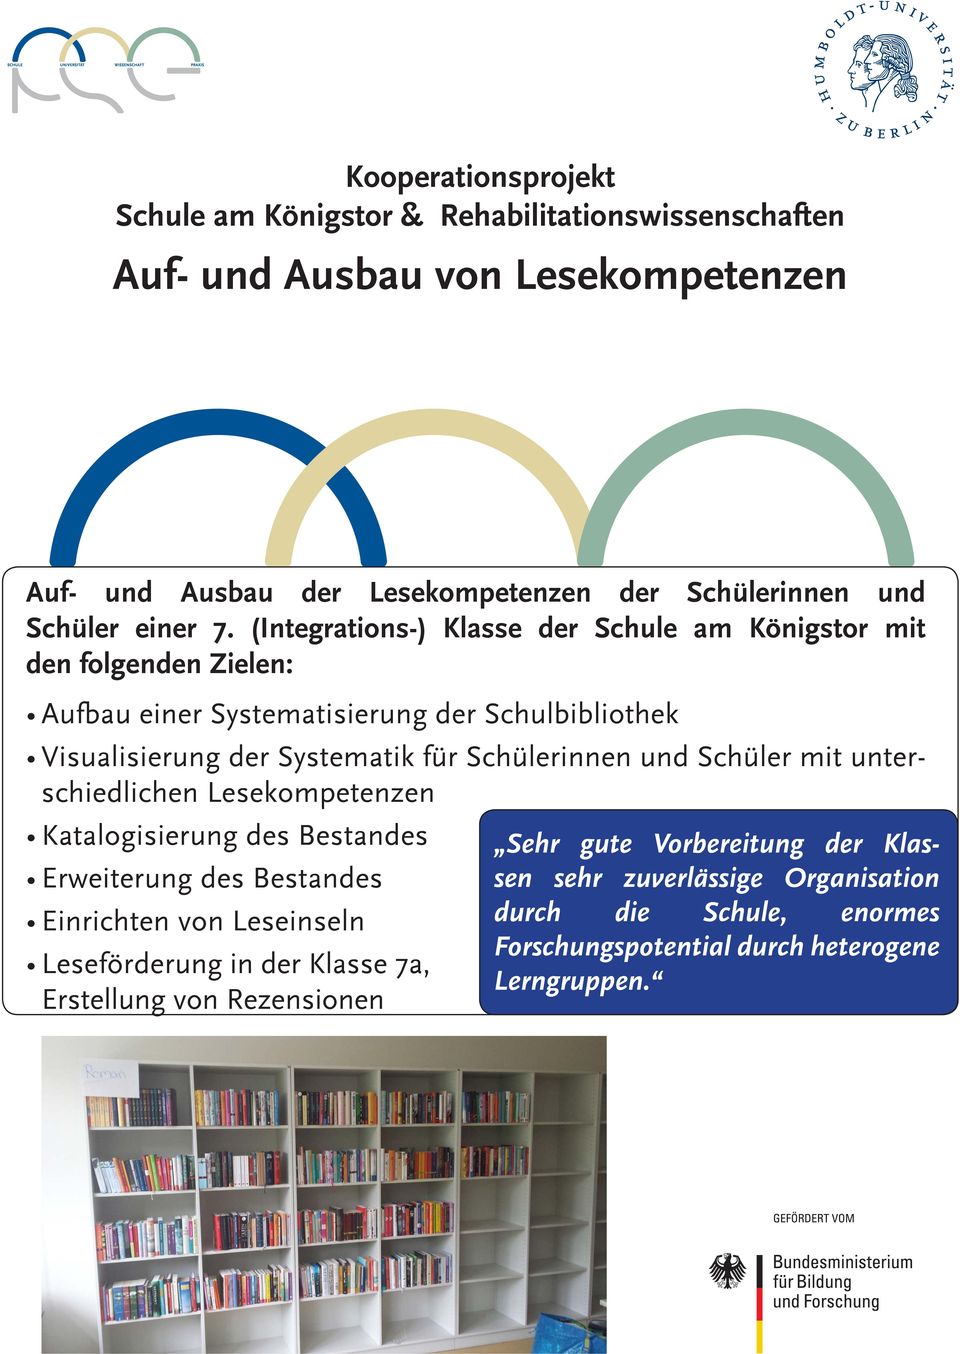 (Integrations-) Klasse der Schule am Königstor mit den folgenden Zielen: Aufbau einer Systematisierung der Schulbibliothek Visualisierung der Systematik für Schülerinnen